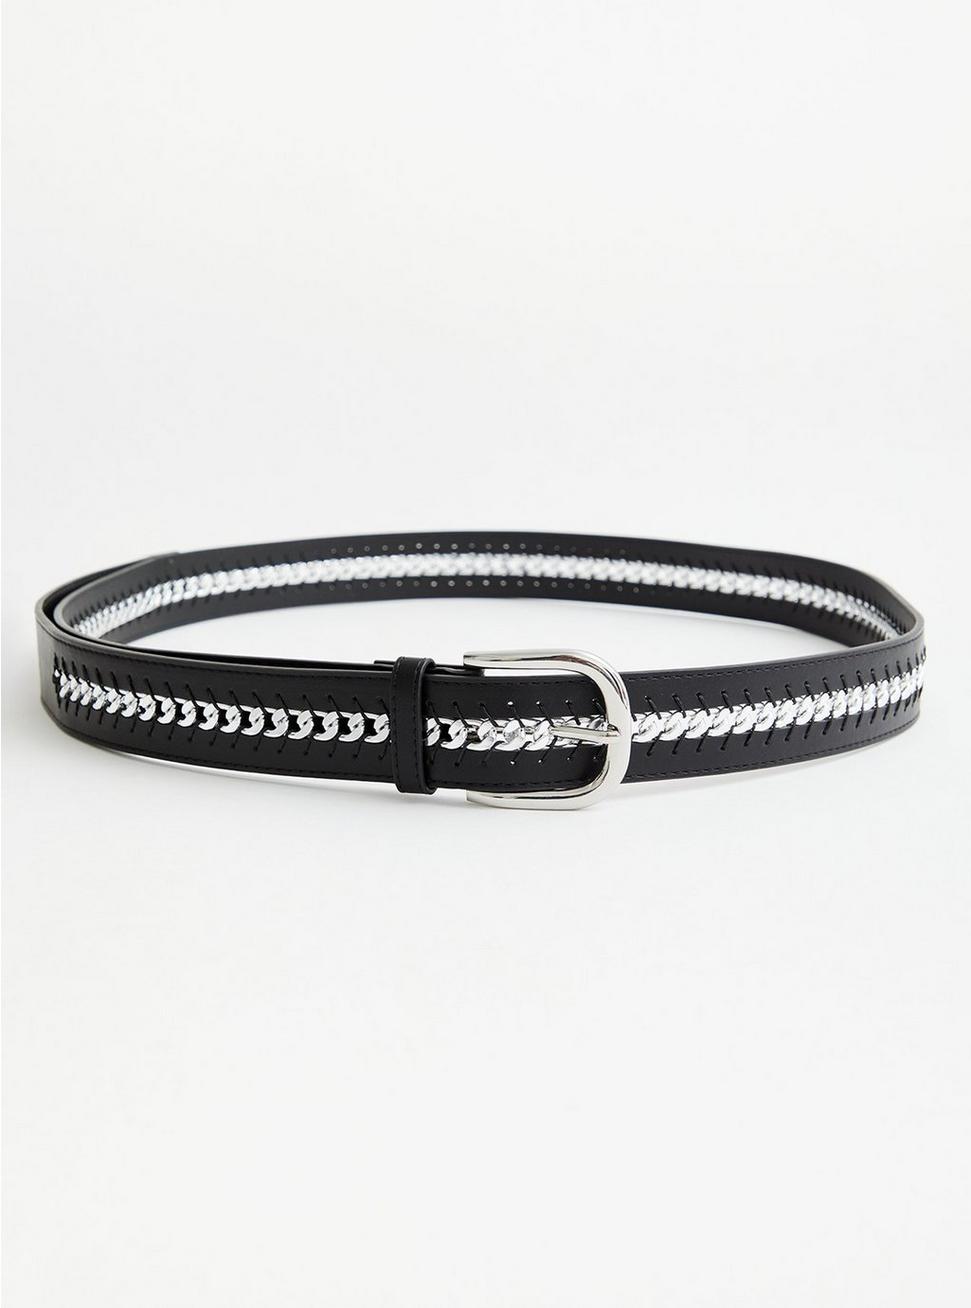 Plus Size - Black Link Faux Leather Belt - Torrid